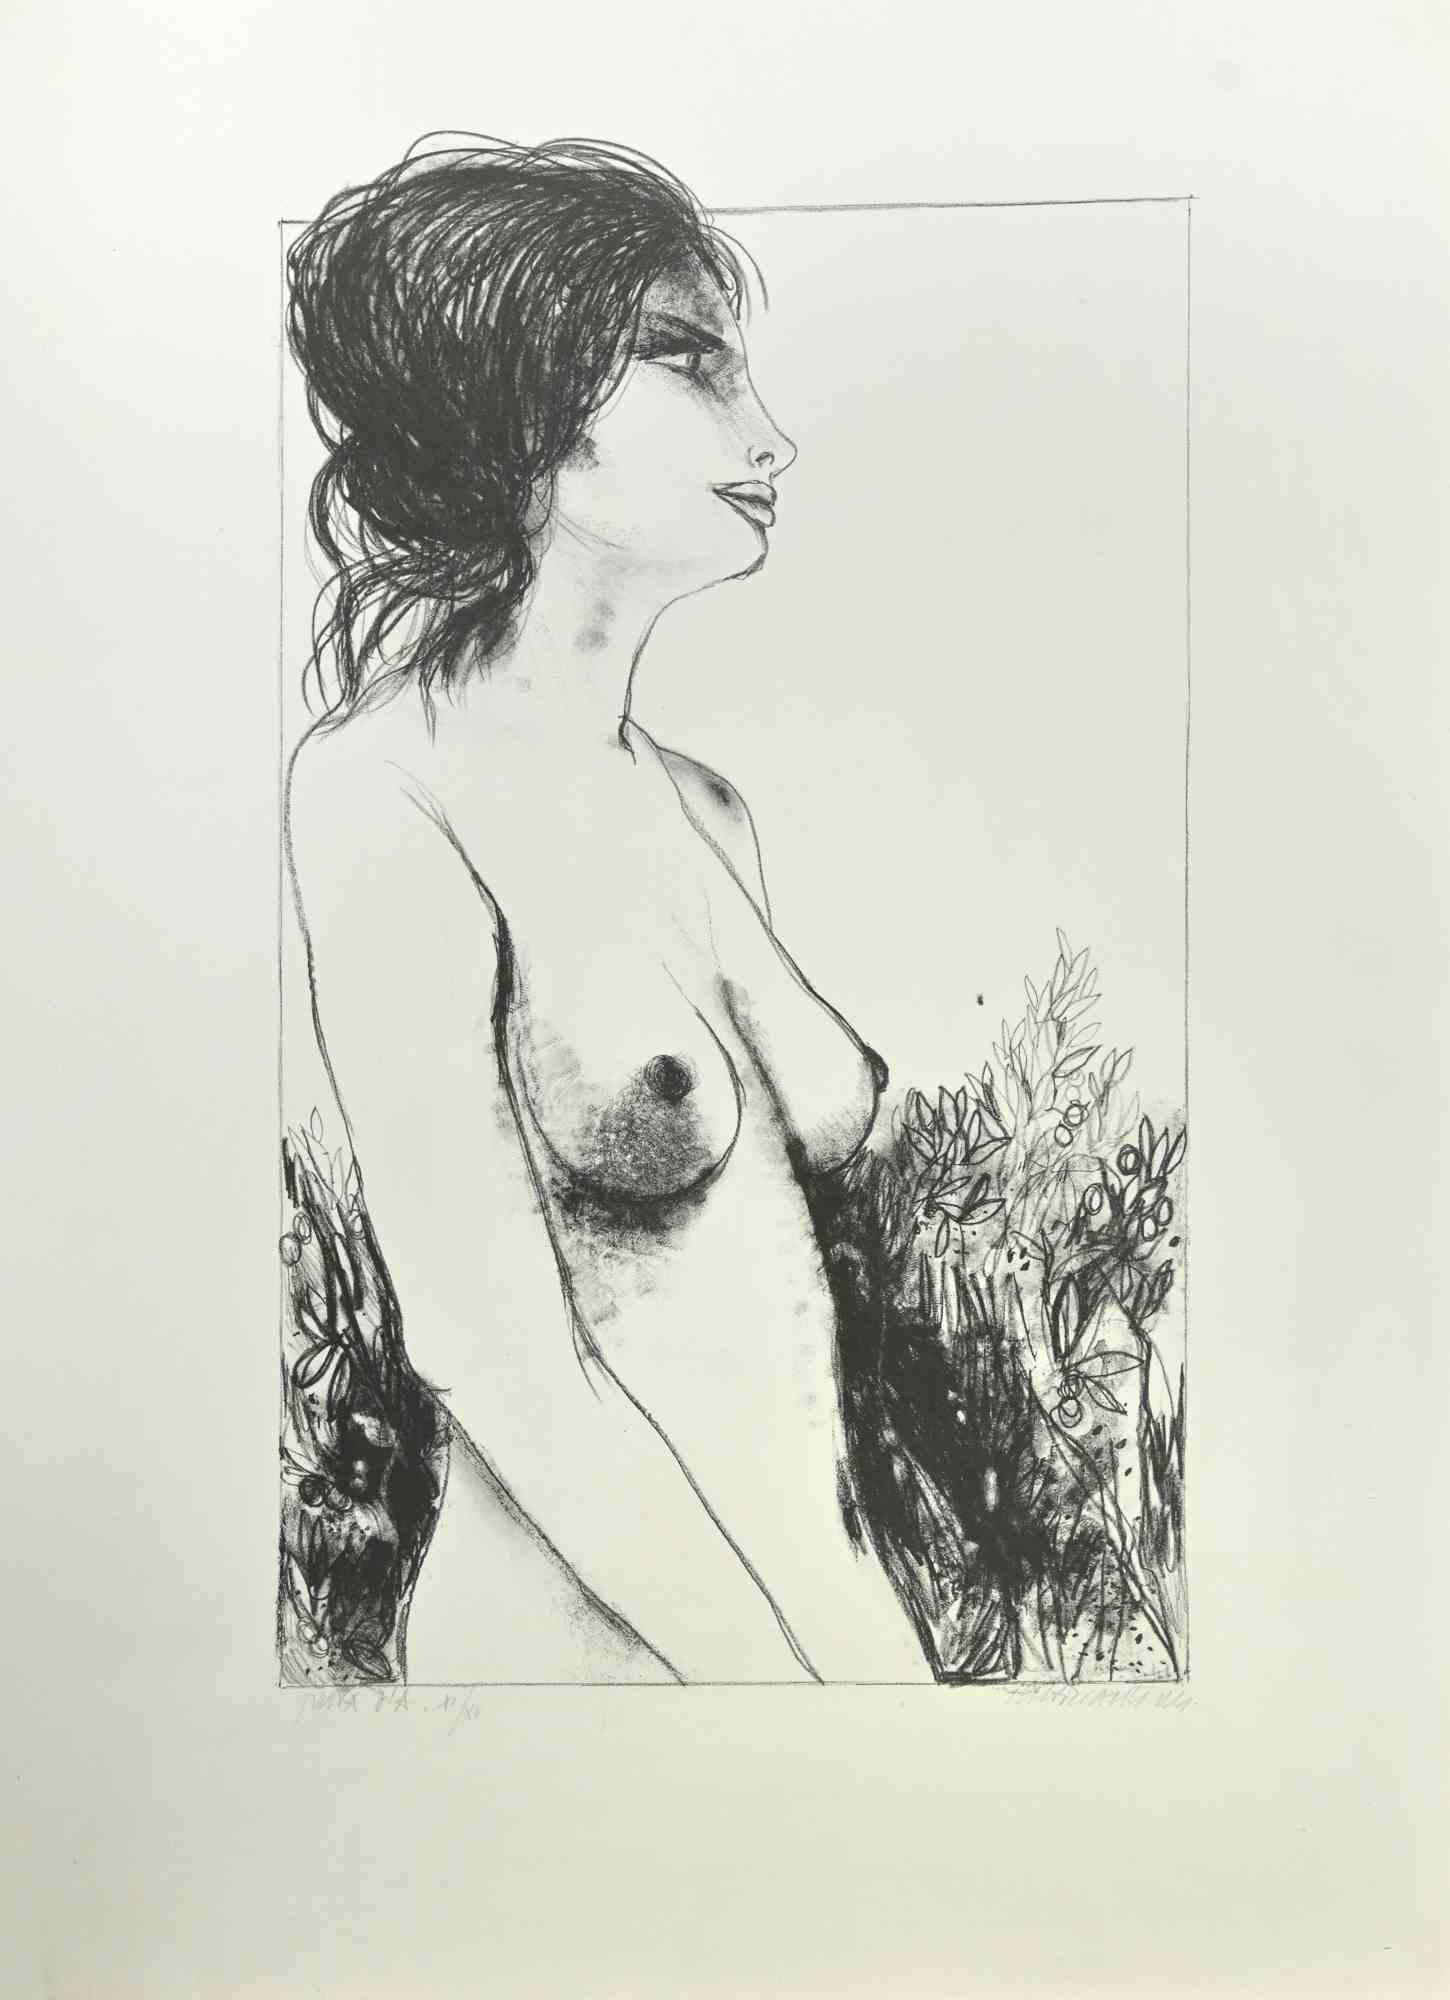 Nu de femme est une lithographie réalisée par Carlo Marcantonio dans les années 1970.

Ce tirage est signé à la main. Il s'agit d'une édition de 50 tirages plus quelques épreuves d'artiste, numérotés 11/15.

Les tirages sont les œuvres d'art les